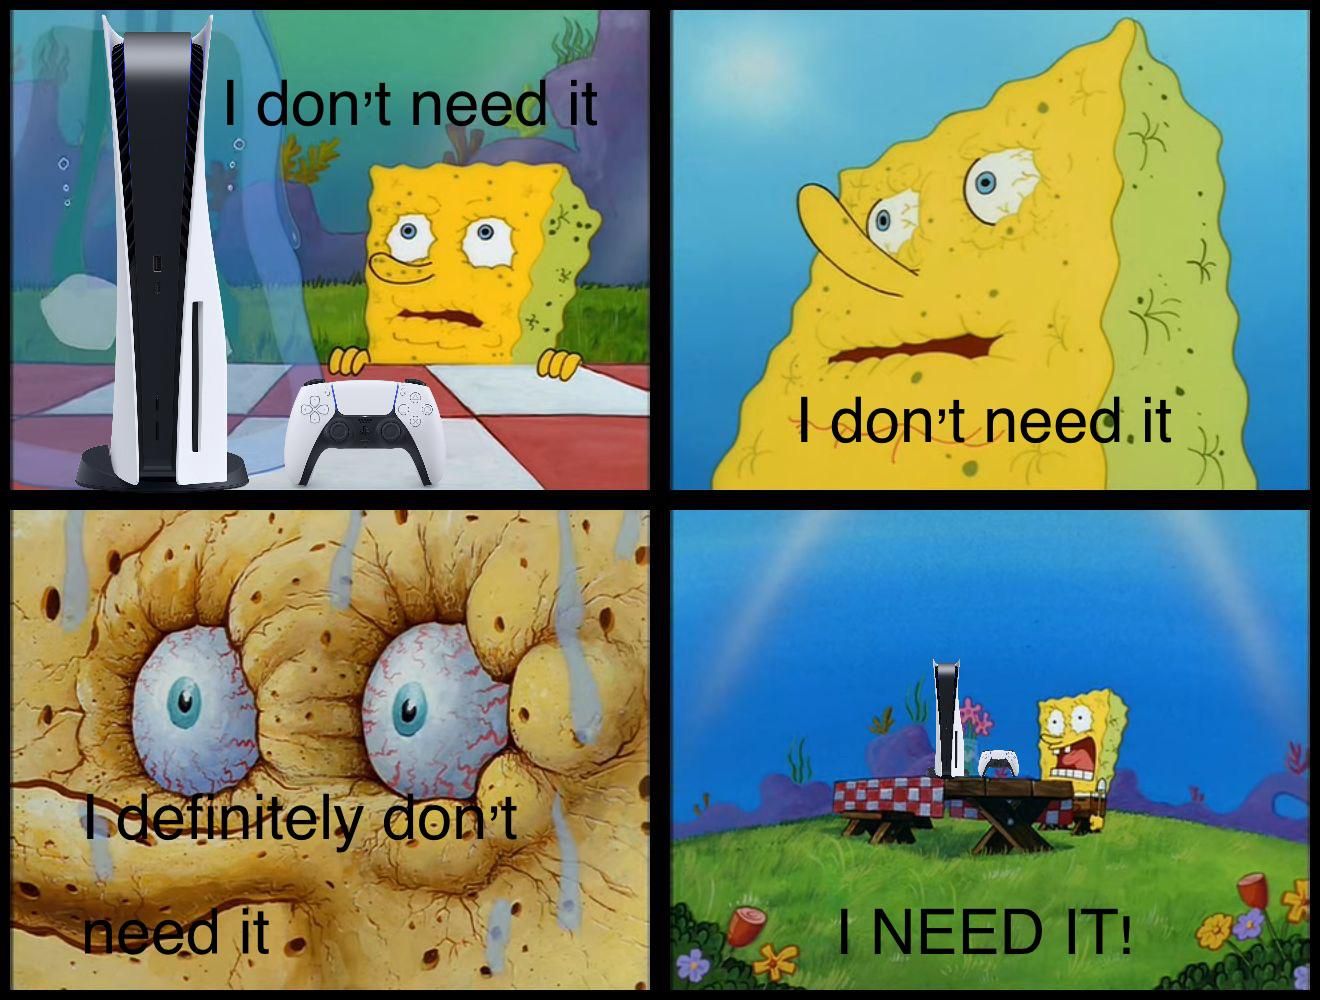 SpongeBob really needs a PS5 meme